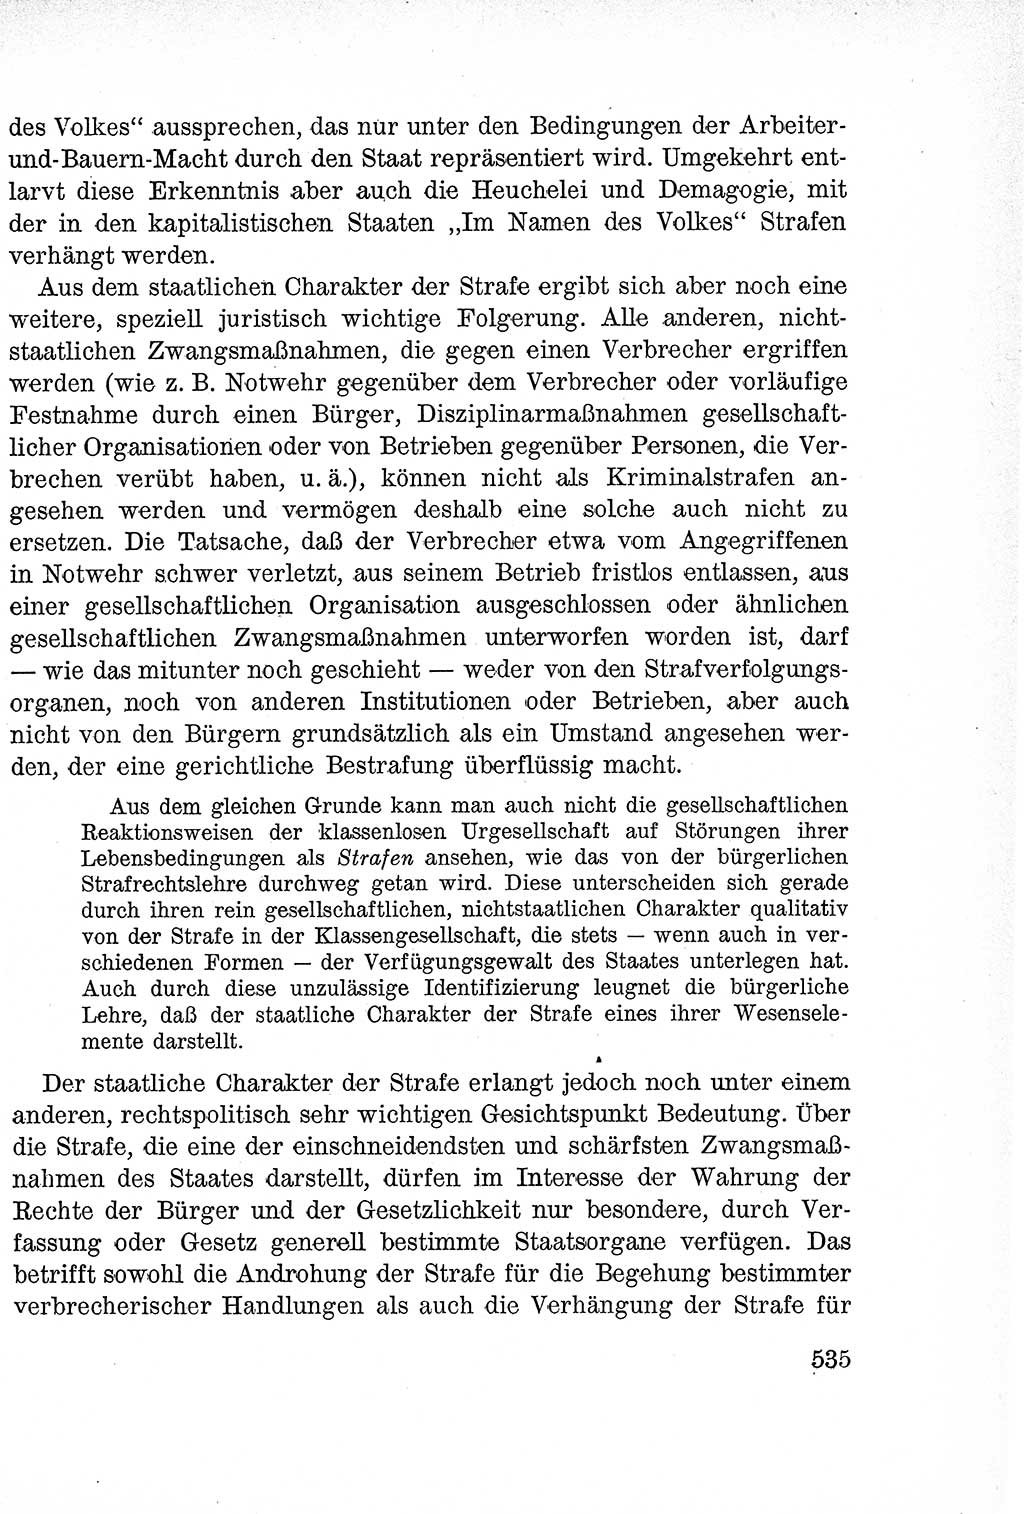 Lehrbuch des Strafrechts der Deutschen Demokratischen Republik (DDR), Allgemeiner Teil 1957, Seite 535 (Lb. Strafr. DDR AT 1957, S. 535)